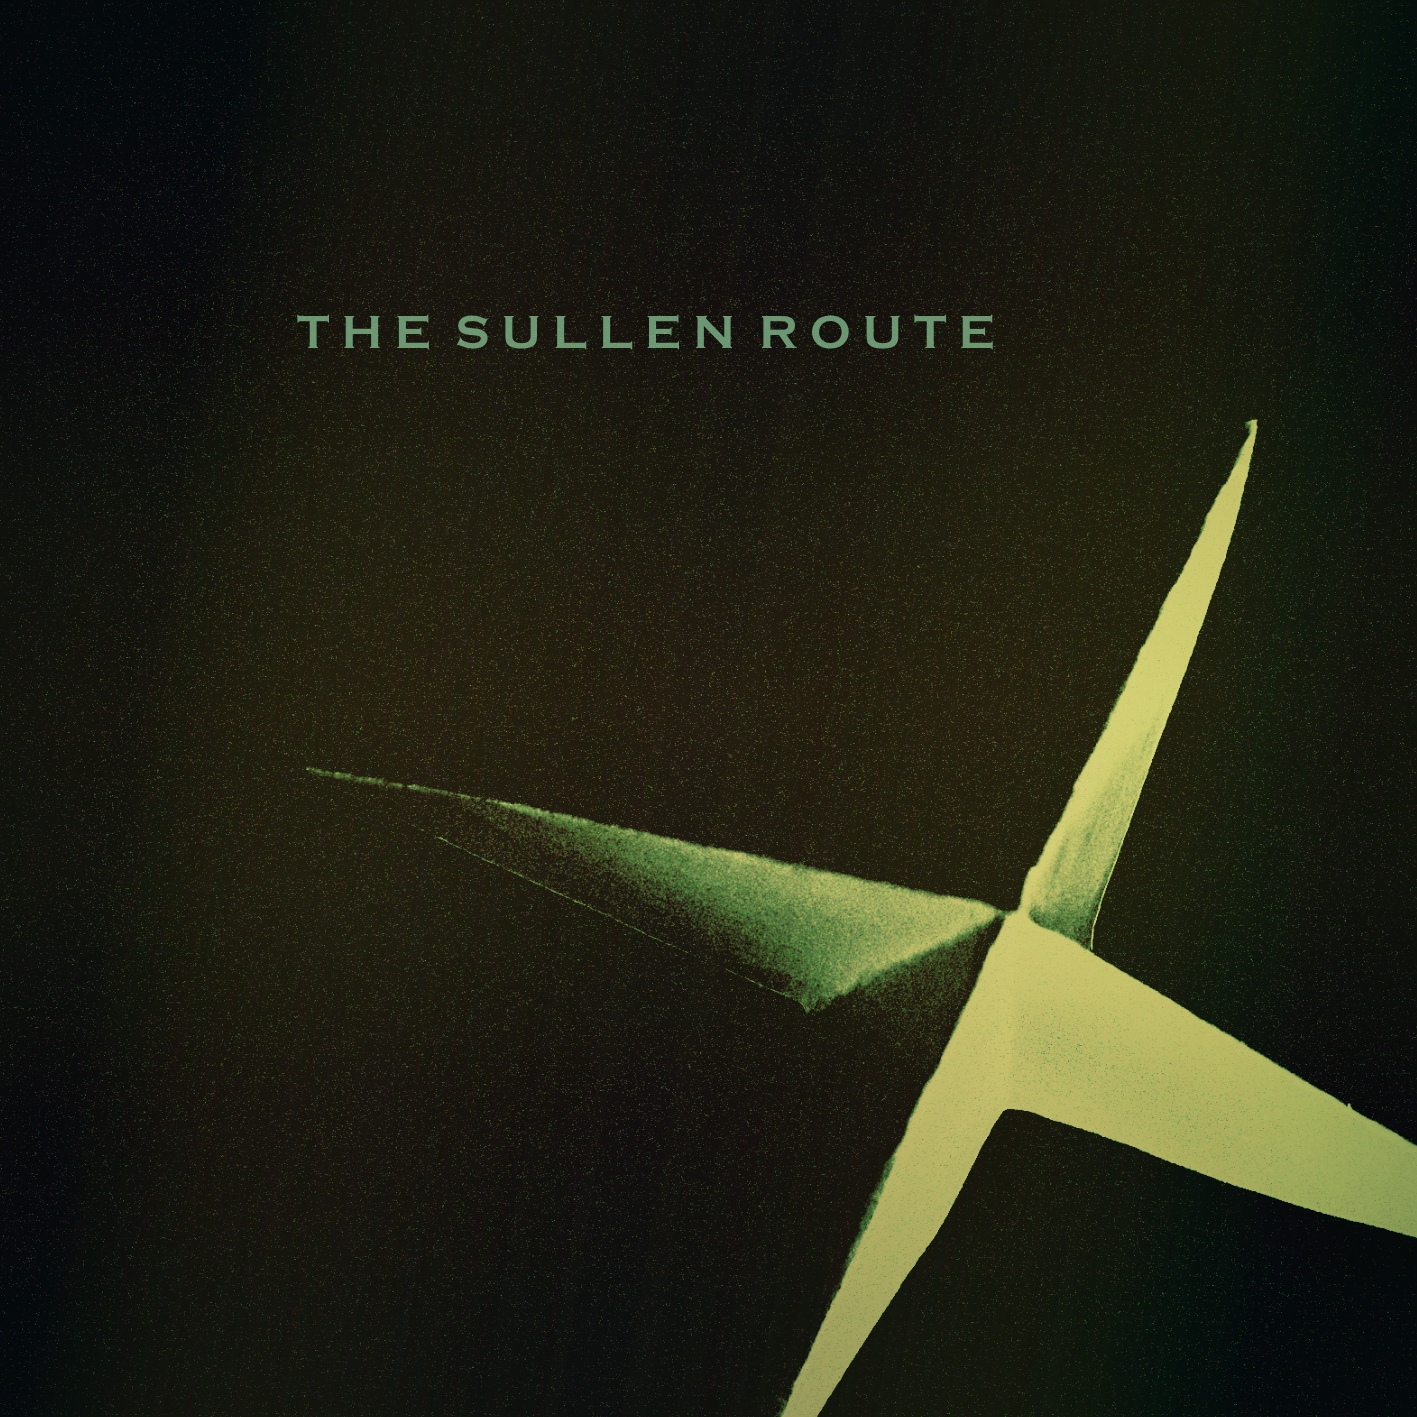 The Sullen Route